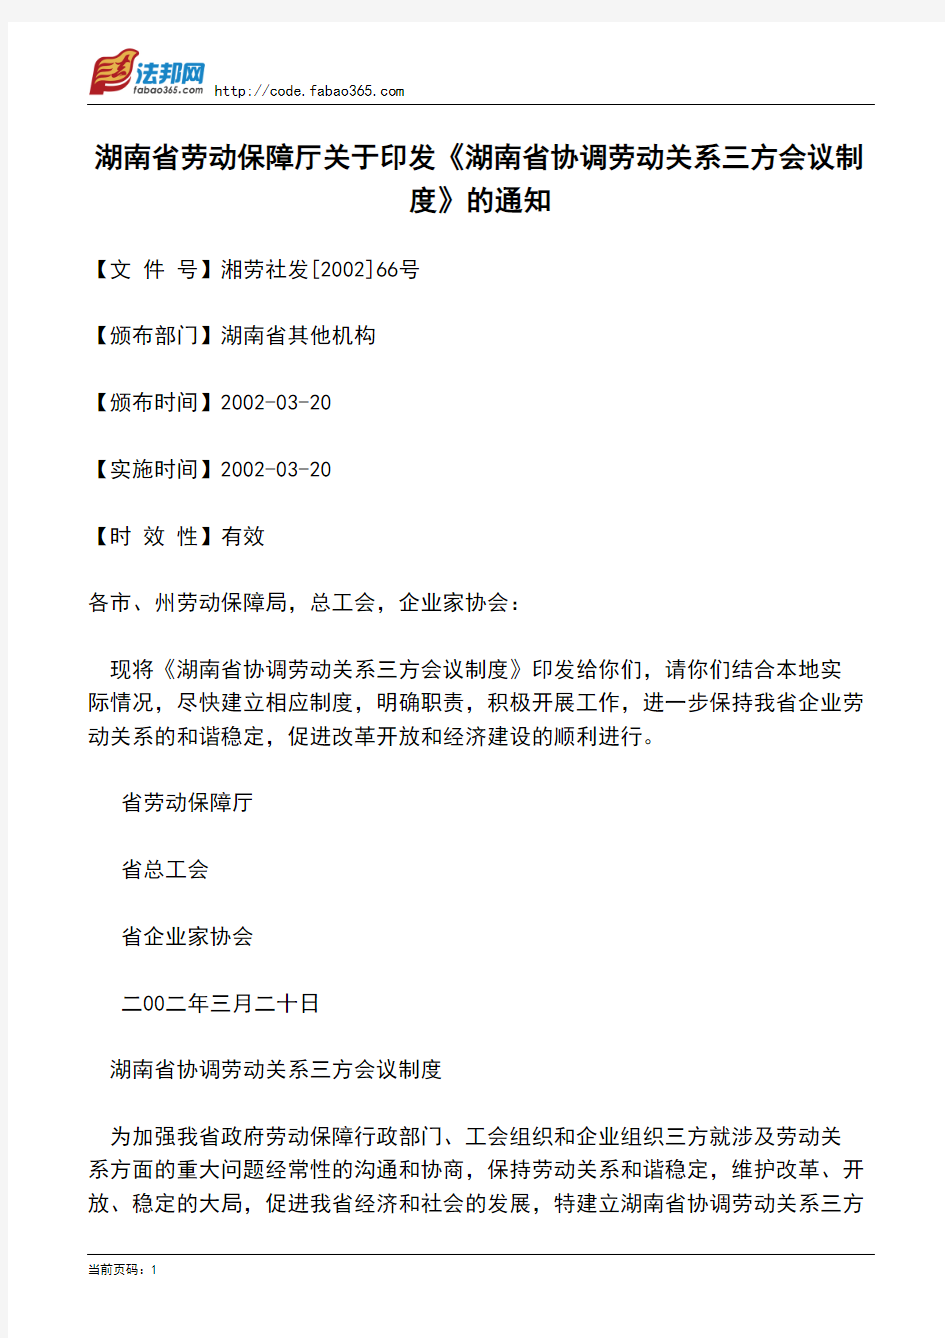 湖南省劳动保障厅关于印发《湖南省协调劳动关系三方会议制度》的通知